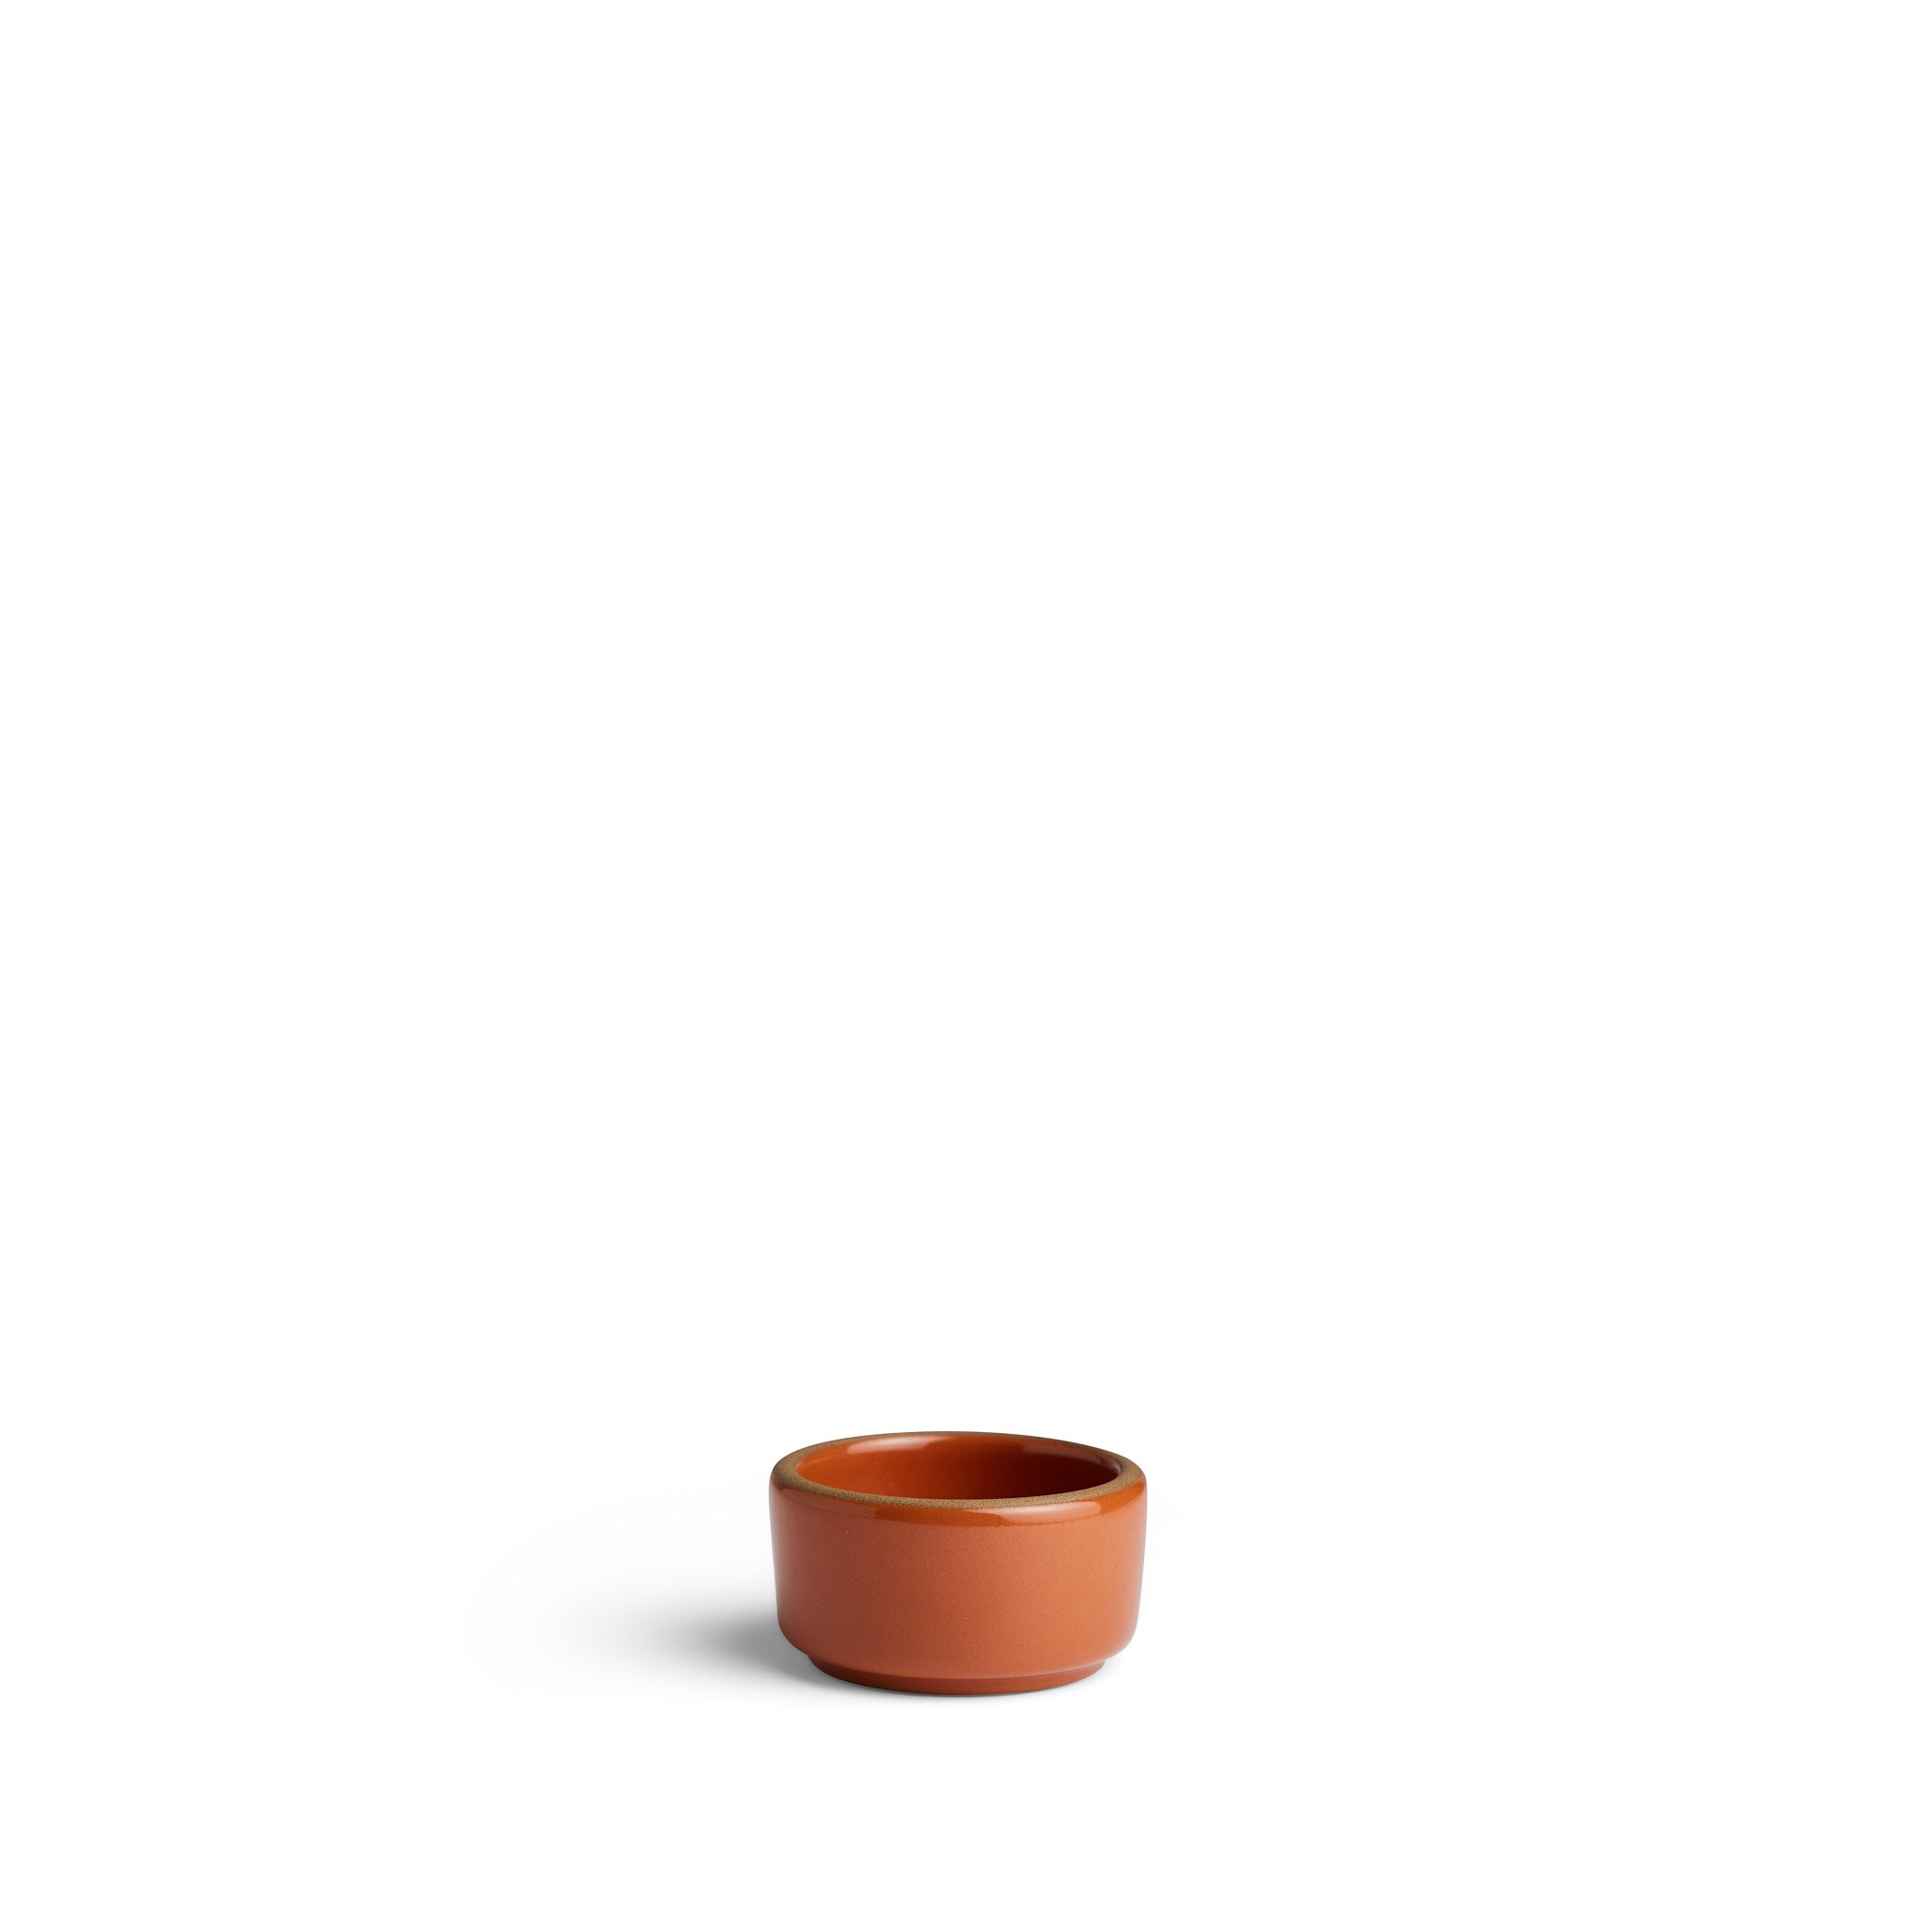 Small Ramekin in Tomato Zoom Image 1